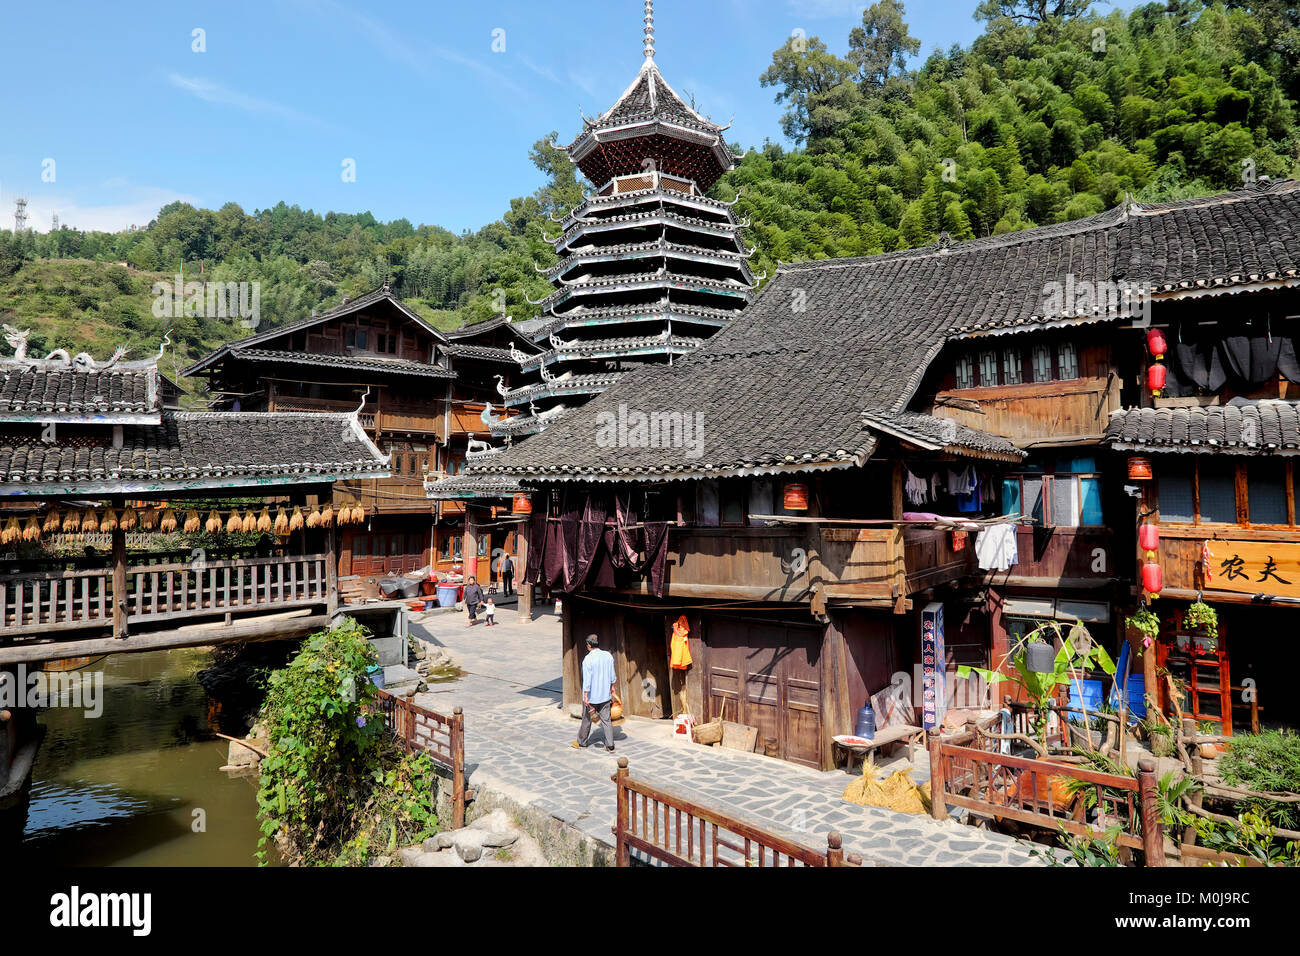 Zhaoxing Village, Liping County, Guizhou Province, China Stock Photo